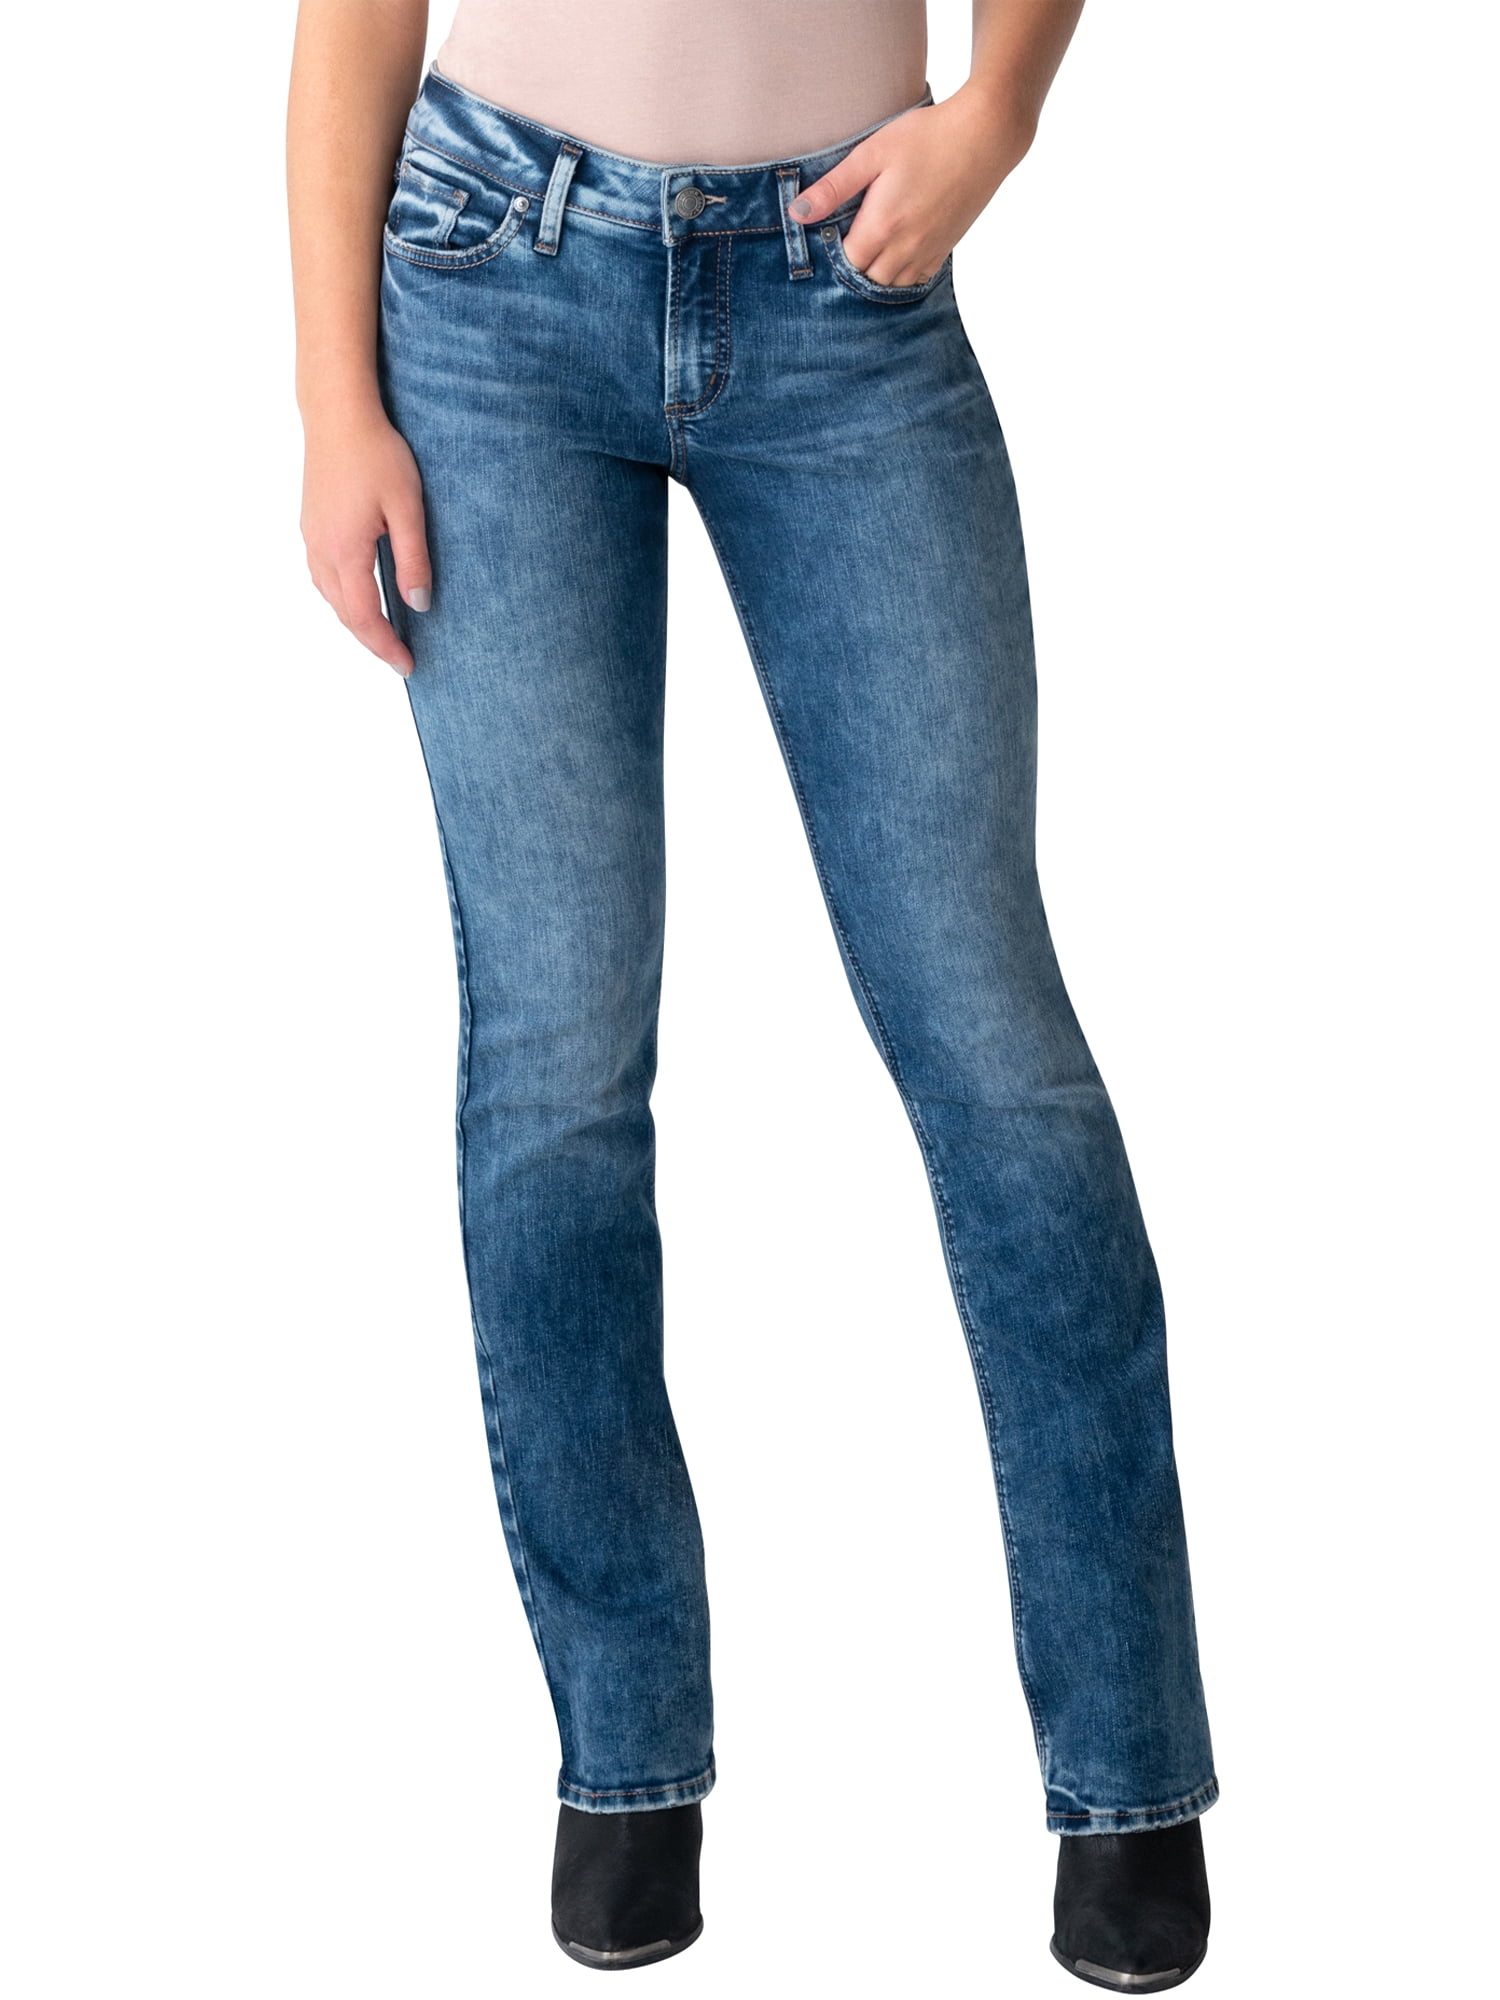 New Silver Womens Jeans Aiko Skinny 24x31 28x31 26x31 